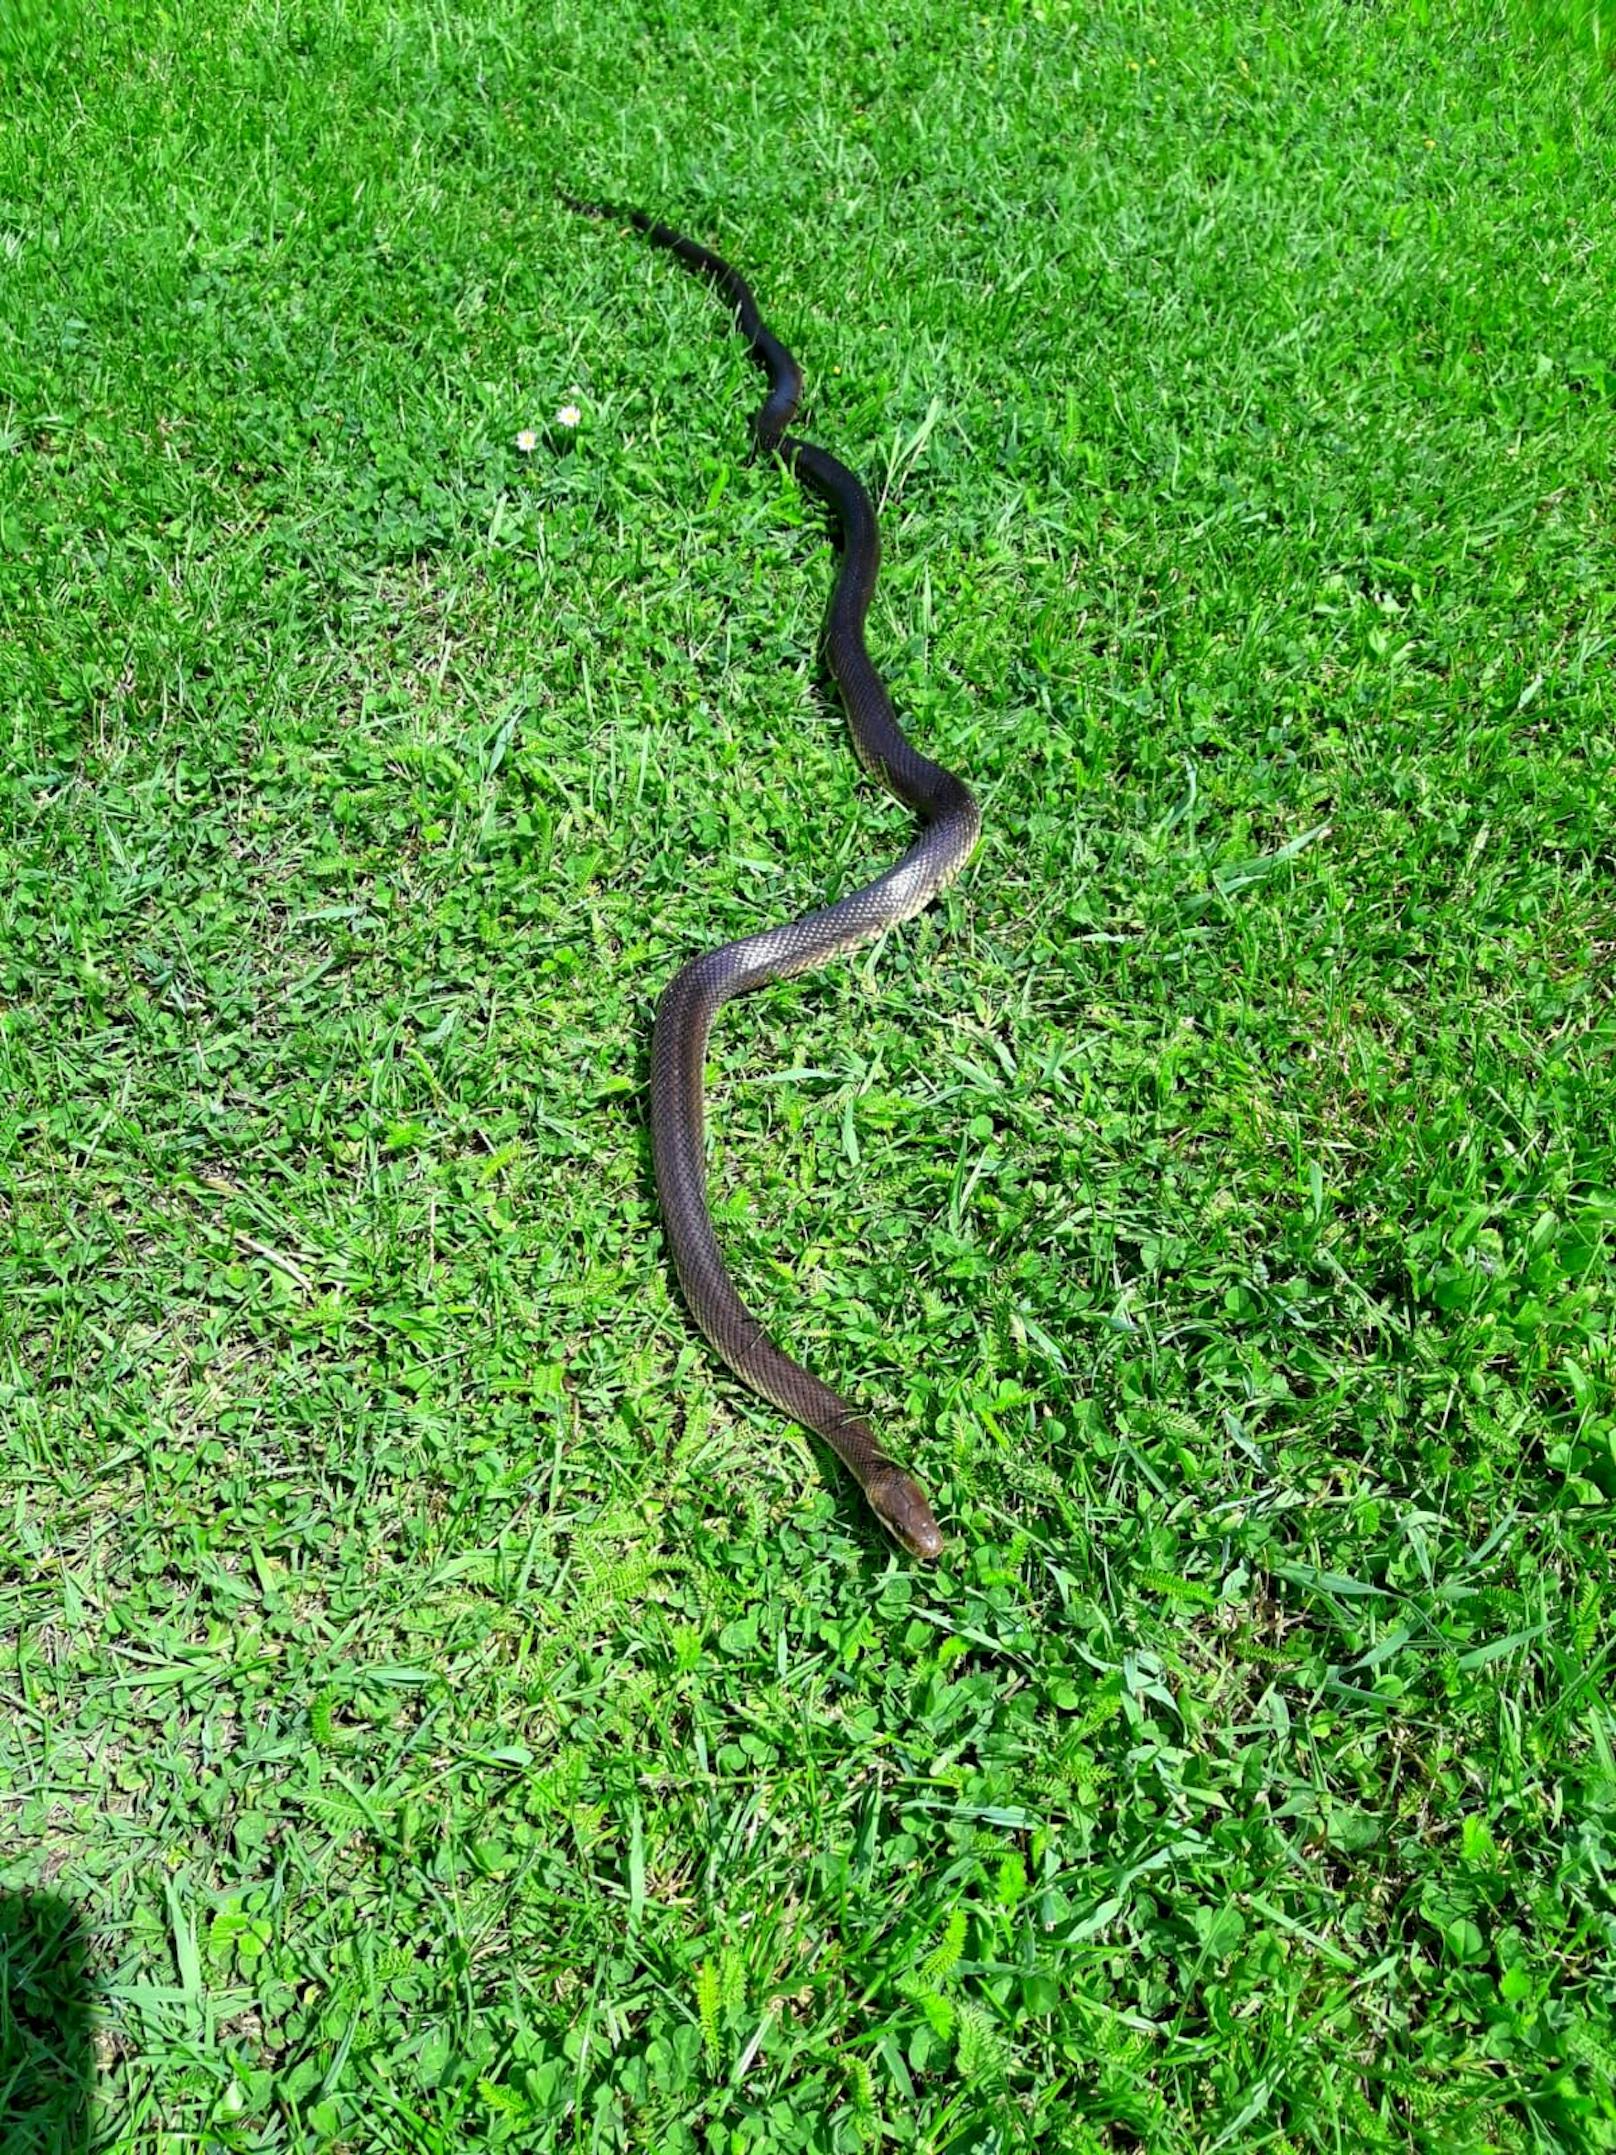 Plötzlich schlängelte sich ein 1,30 Meter lange Schlange vorbei.